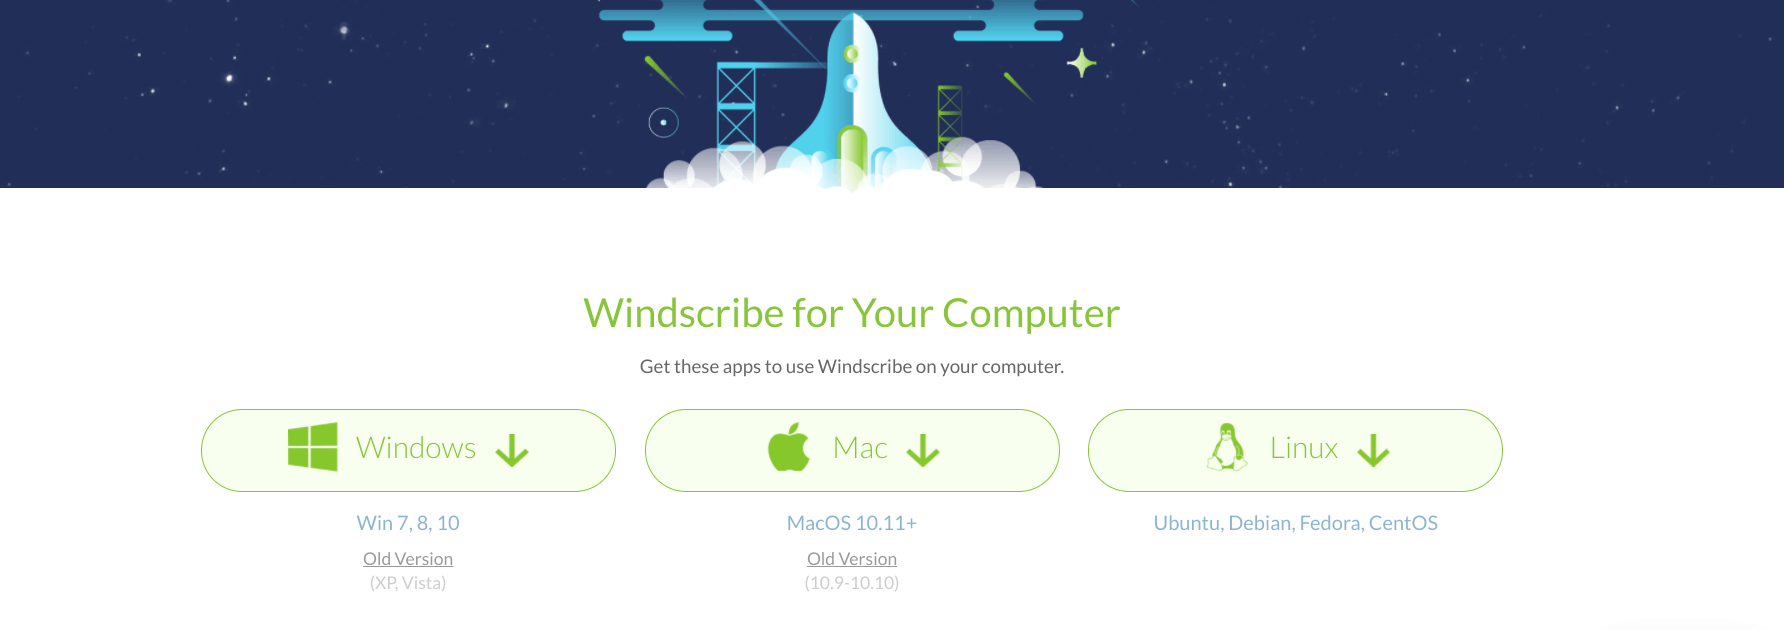 desktop downloads voor windscribe